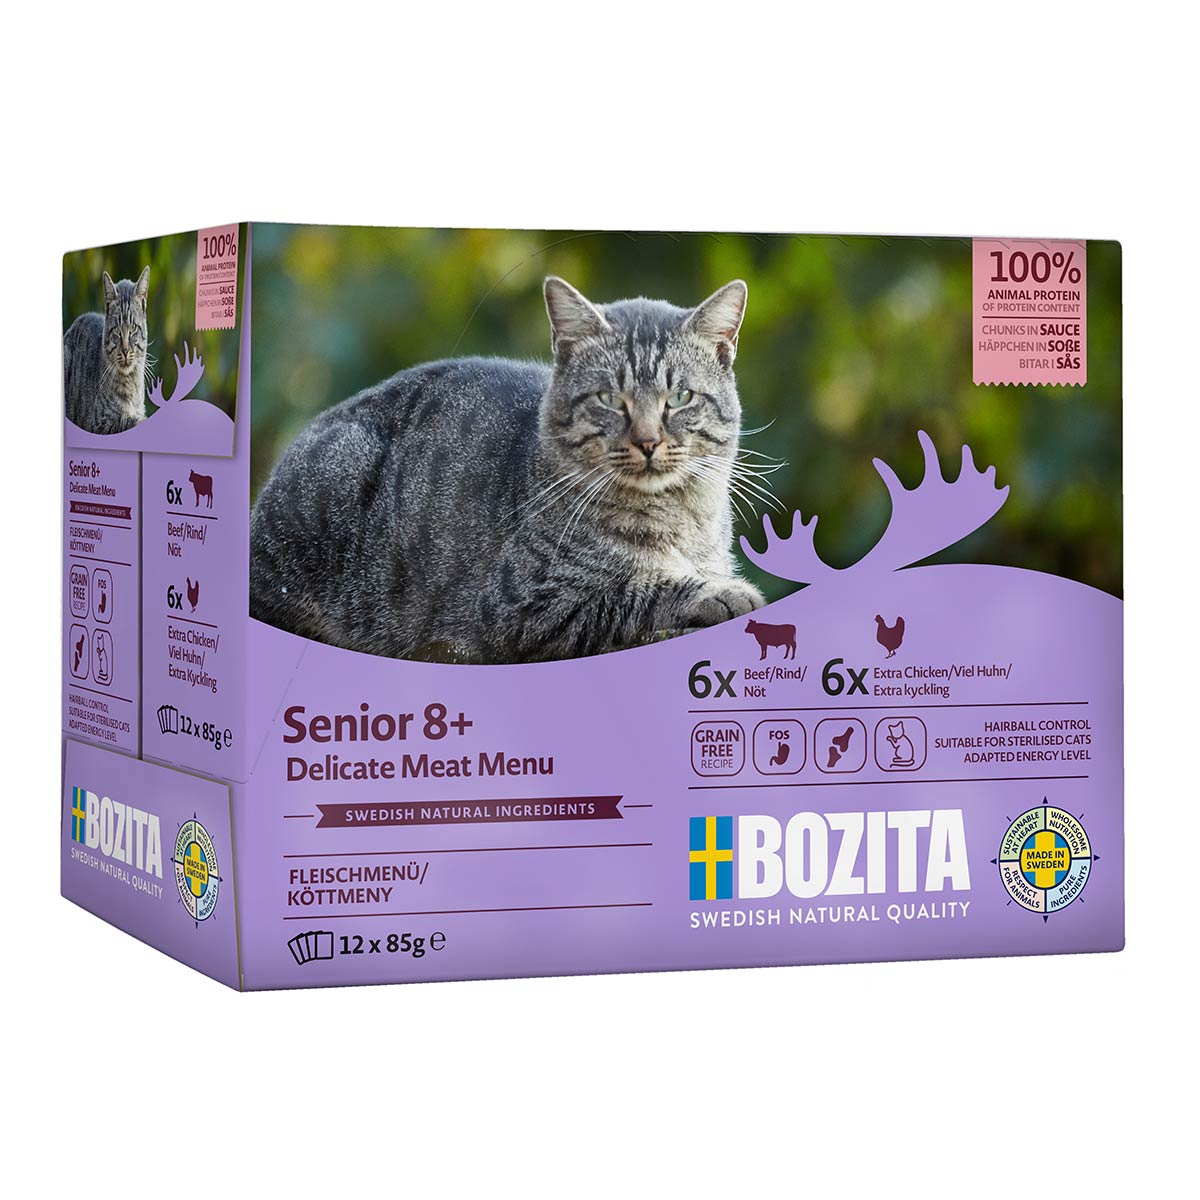 Bozita Pouch Häppchen in Soße Multibox Senior 12x85g von Bozita